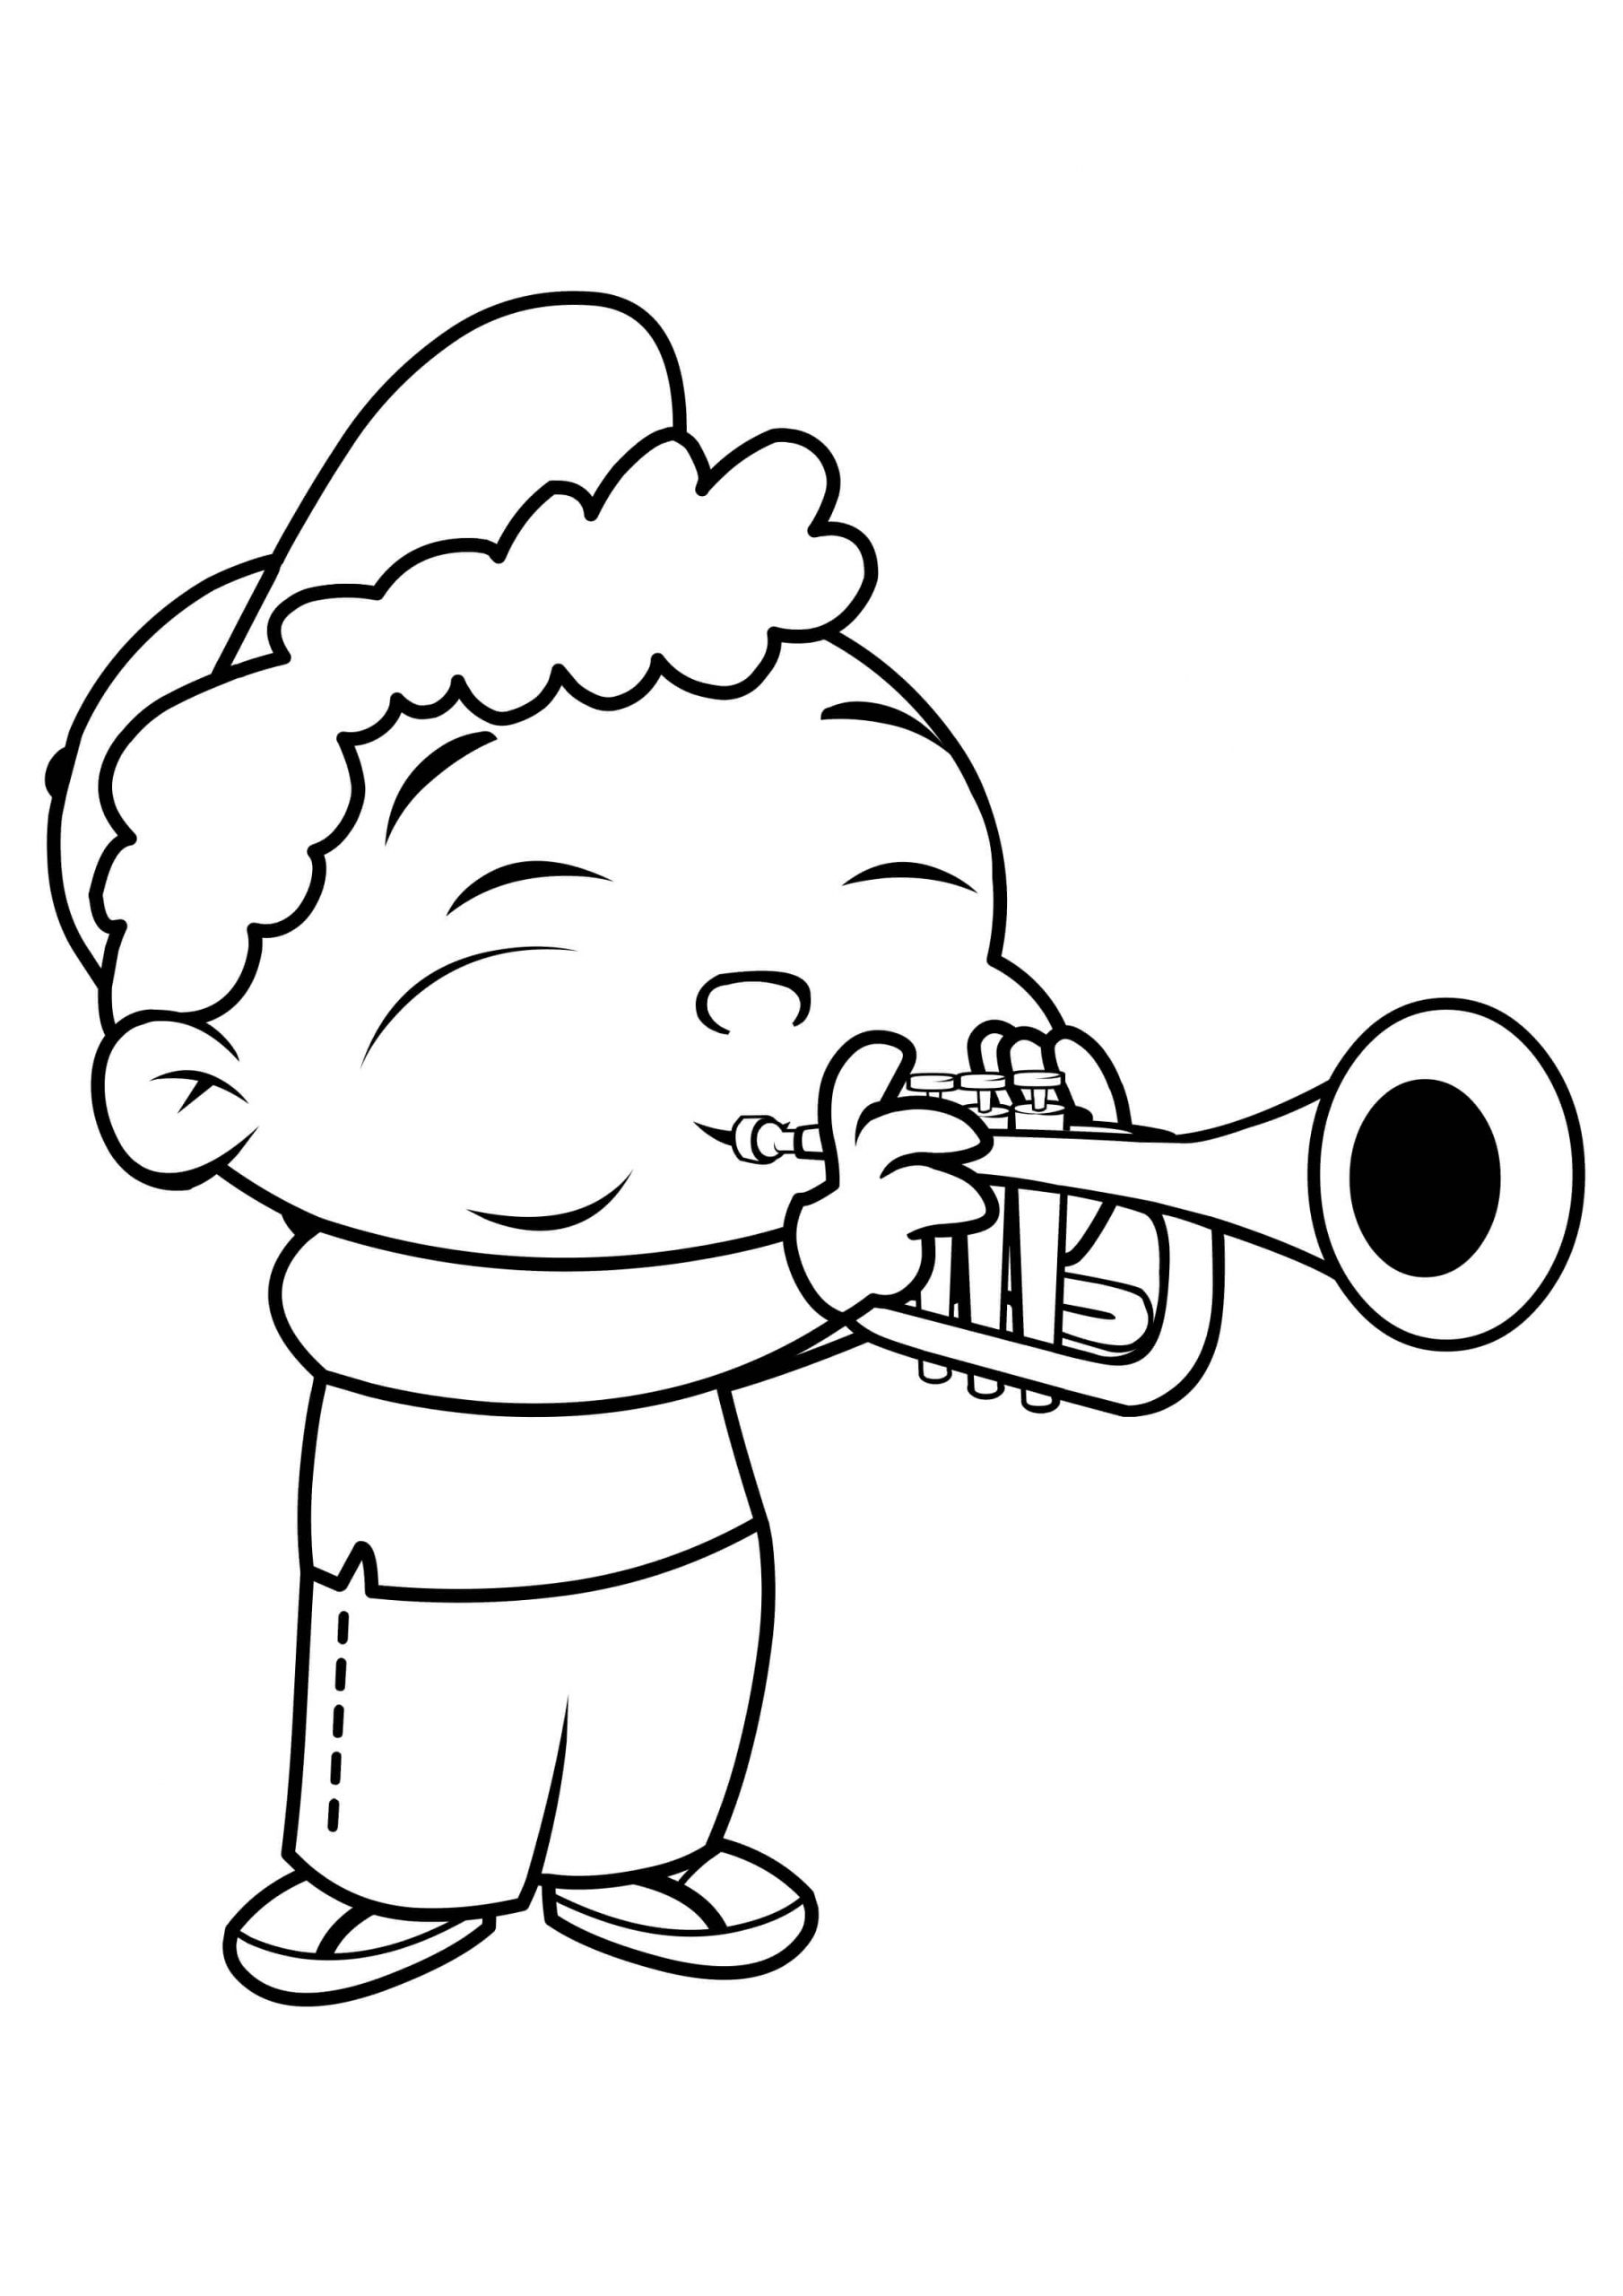 Quincy Spielt die Trompete